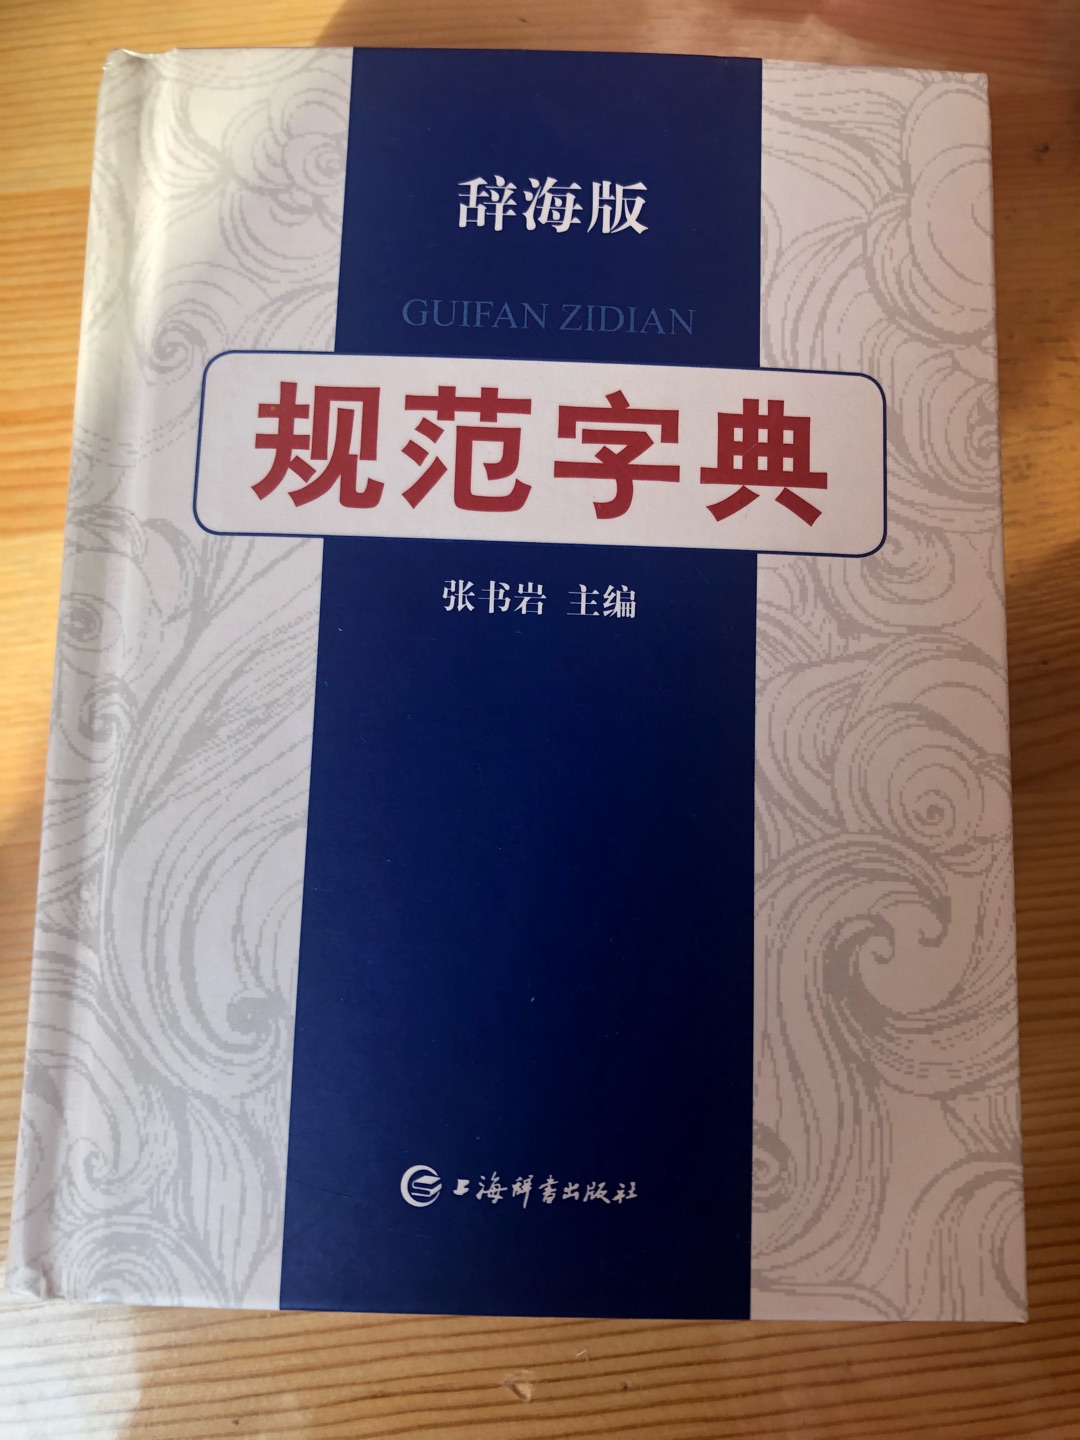 挺好，多学习，中国汉字博大精深。